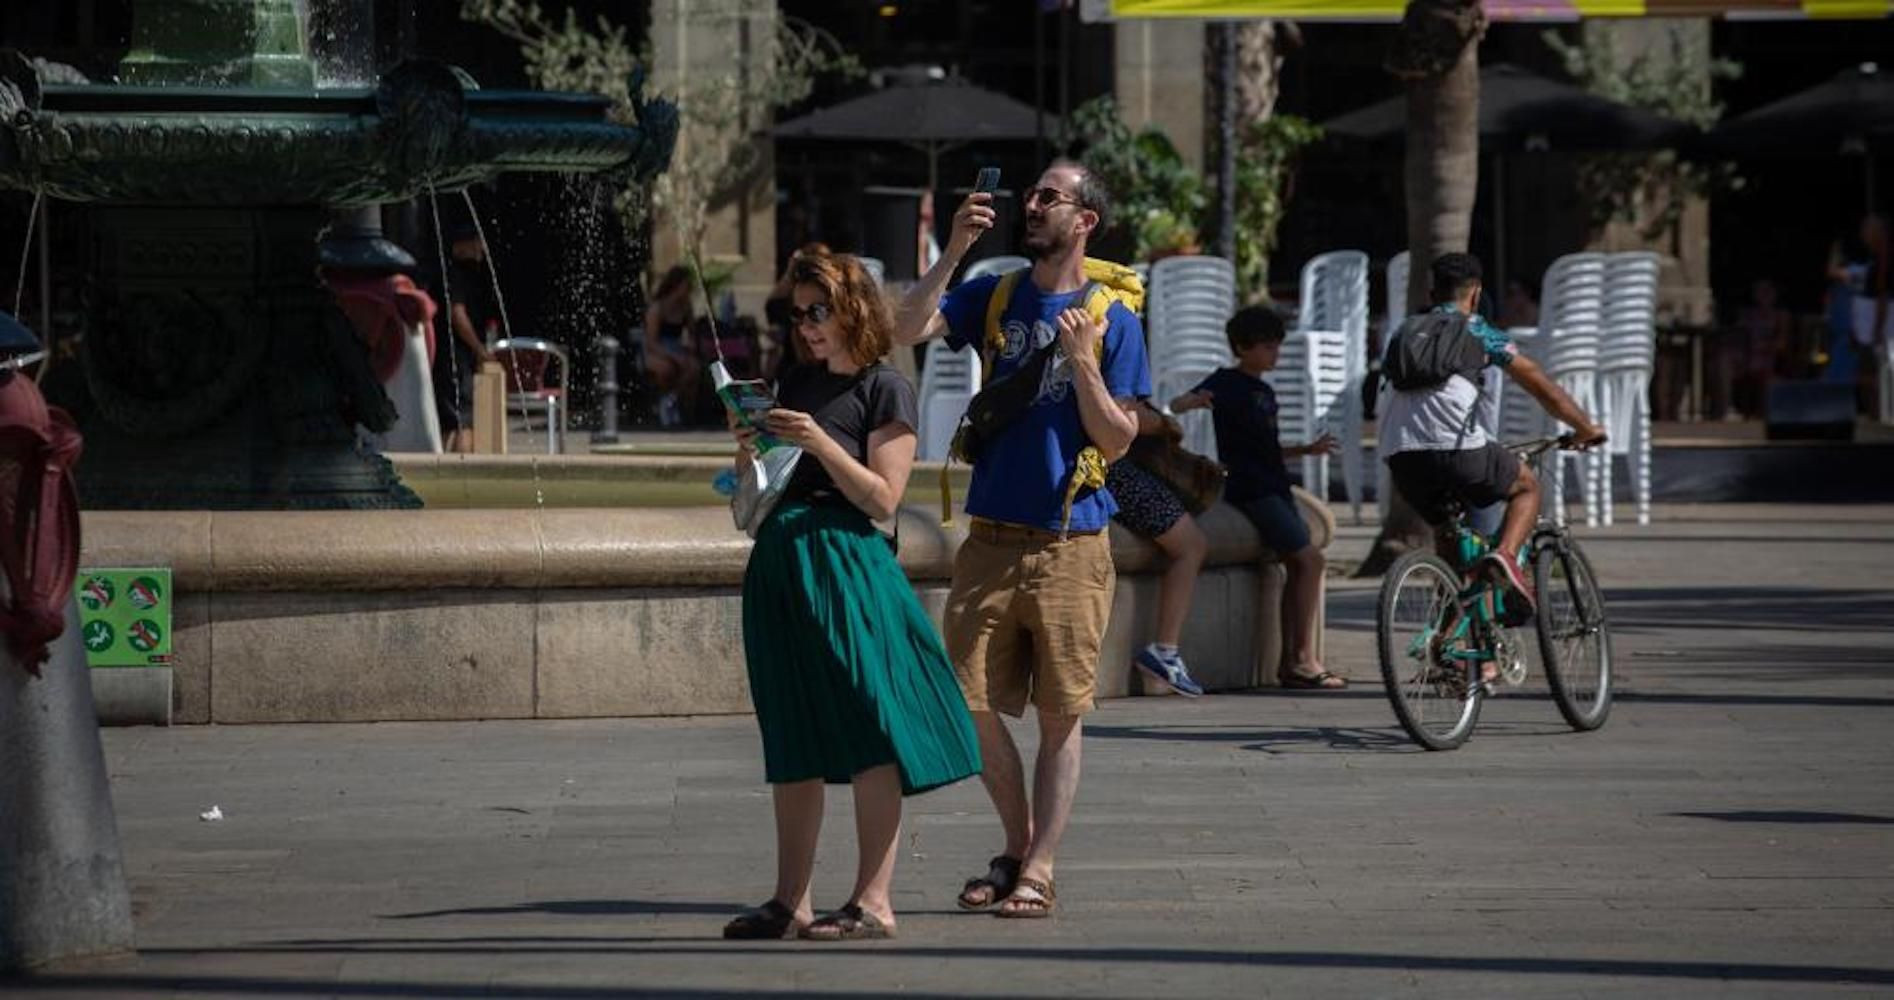 Dos turistas, en la plaza Reial de Barcelona, en una imagen de archivo / DAVID ZORRAKINO - EUROPA PRESS